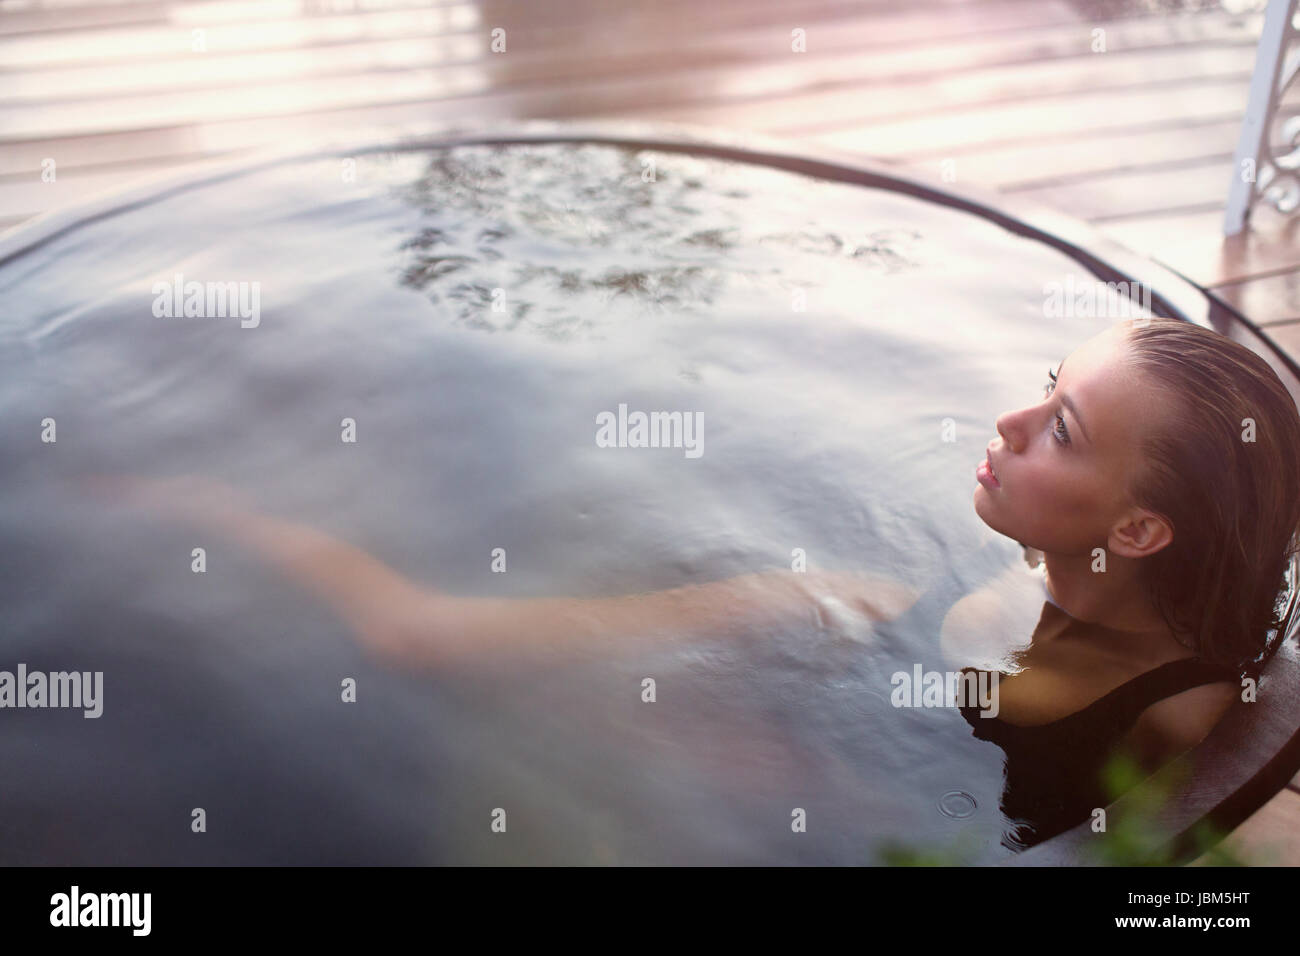 Serena ragazza adolescente in ammollo nella vasca calda sul patio Foto Stock